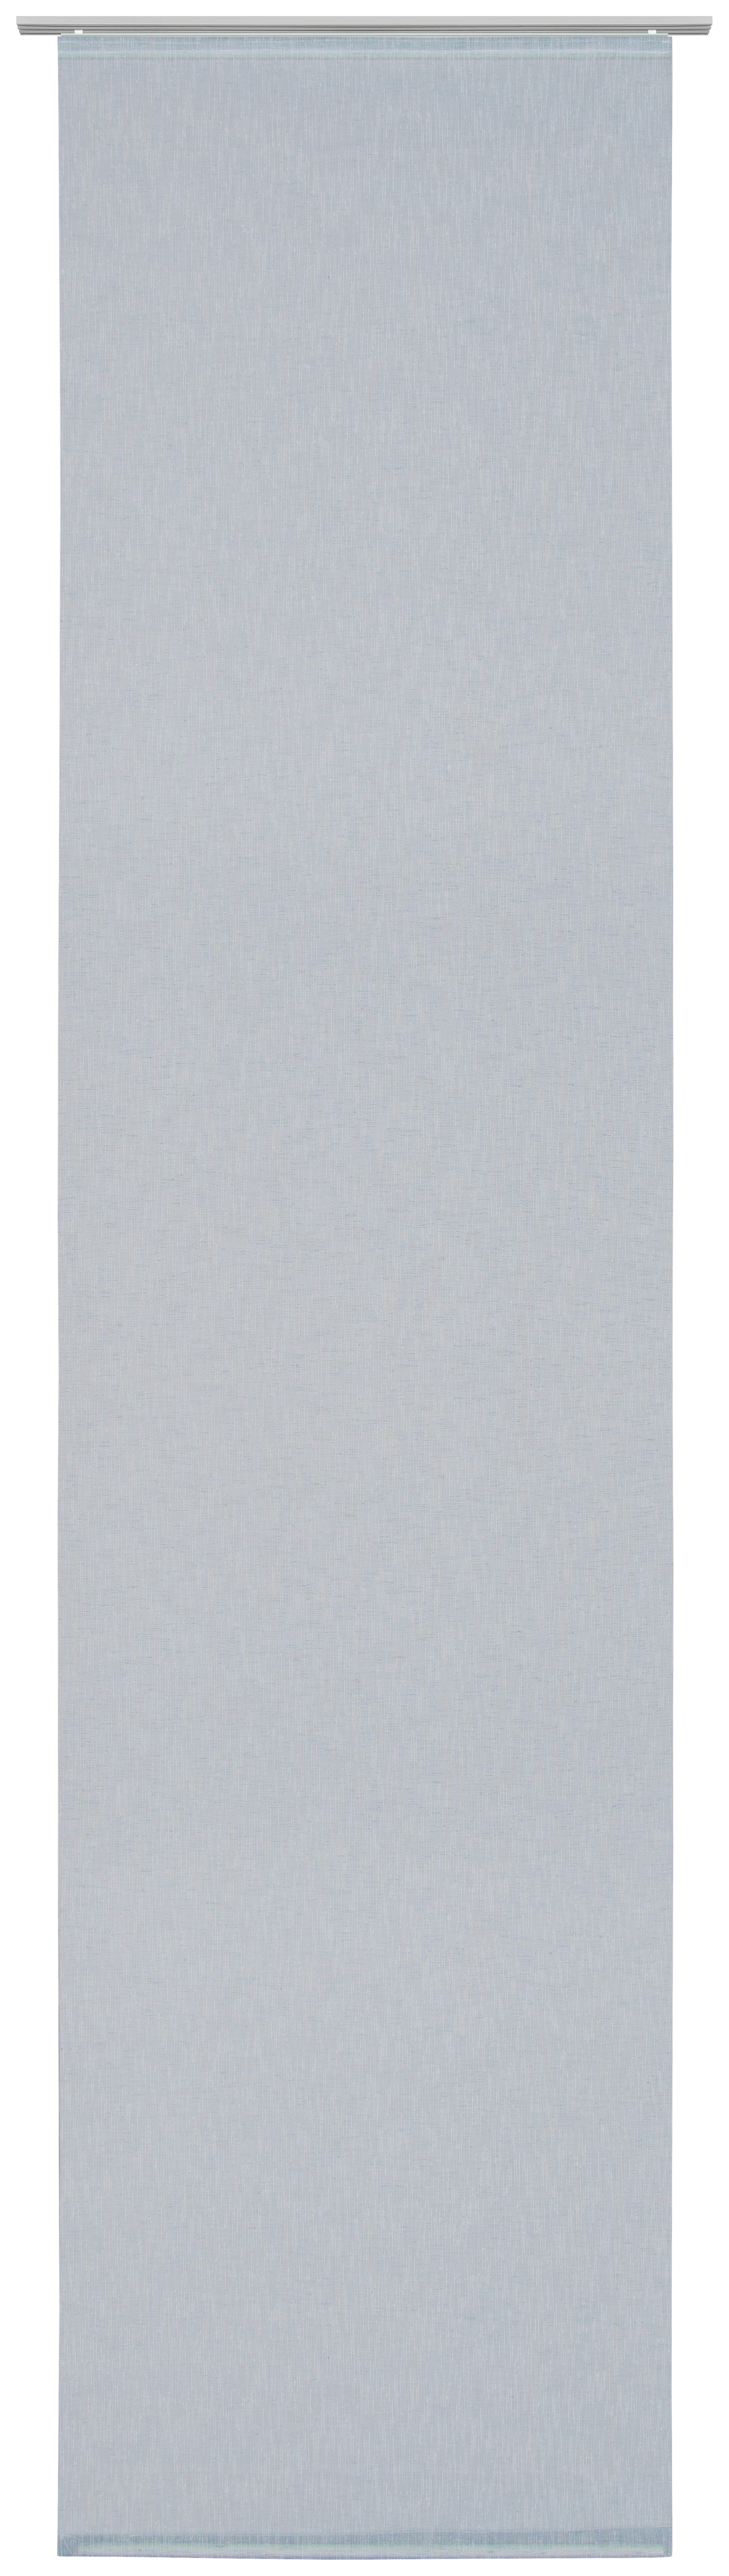 FLÄCHENVORHANG in Blau transparent  - Blau, Design, Textil (60/255cm) - Novel